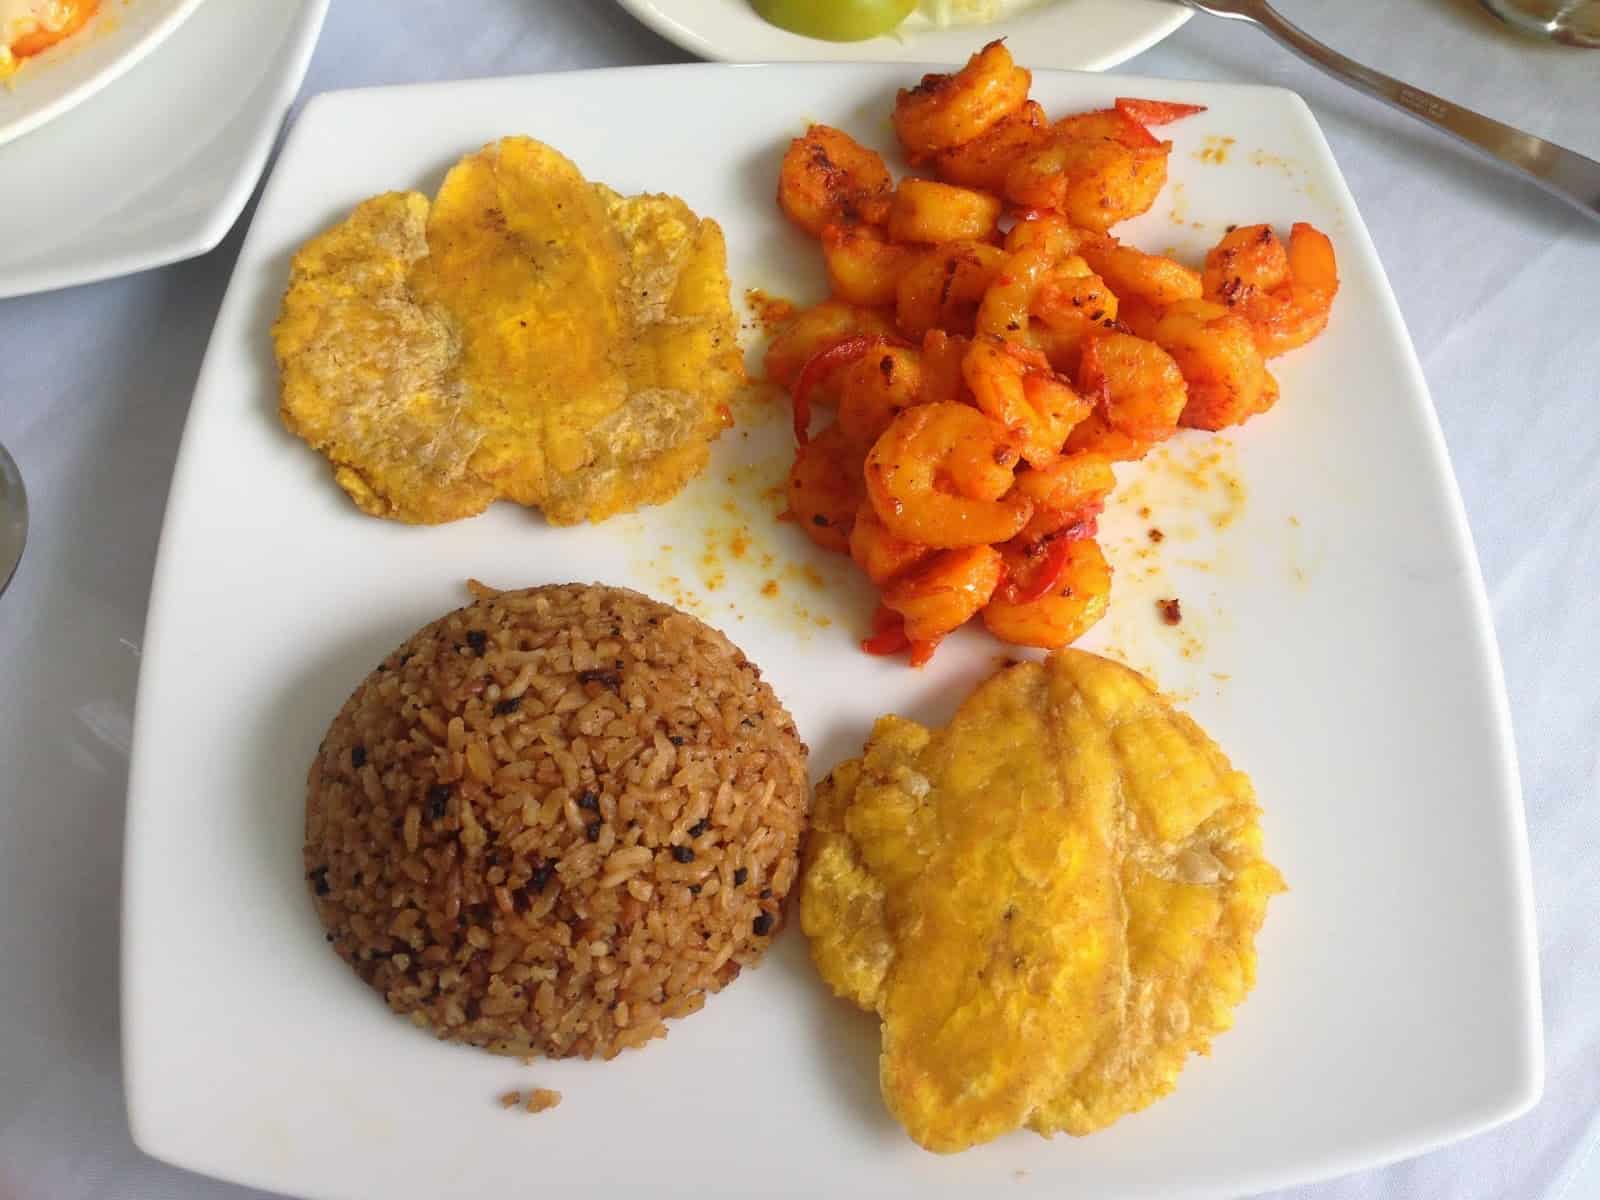 Las Delicias del Caribe restaurant in Chinchiná, Caldas, Colombia